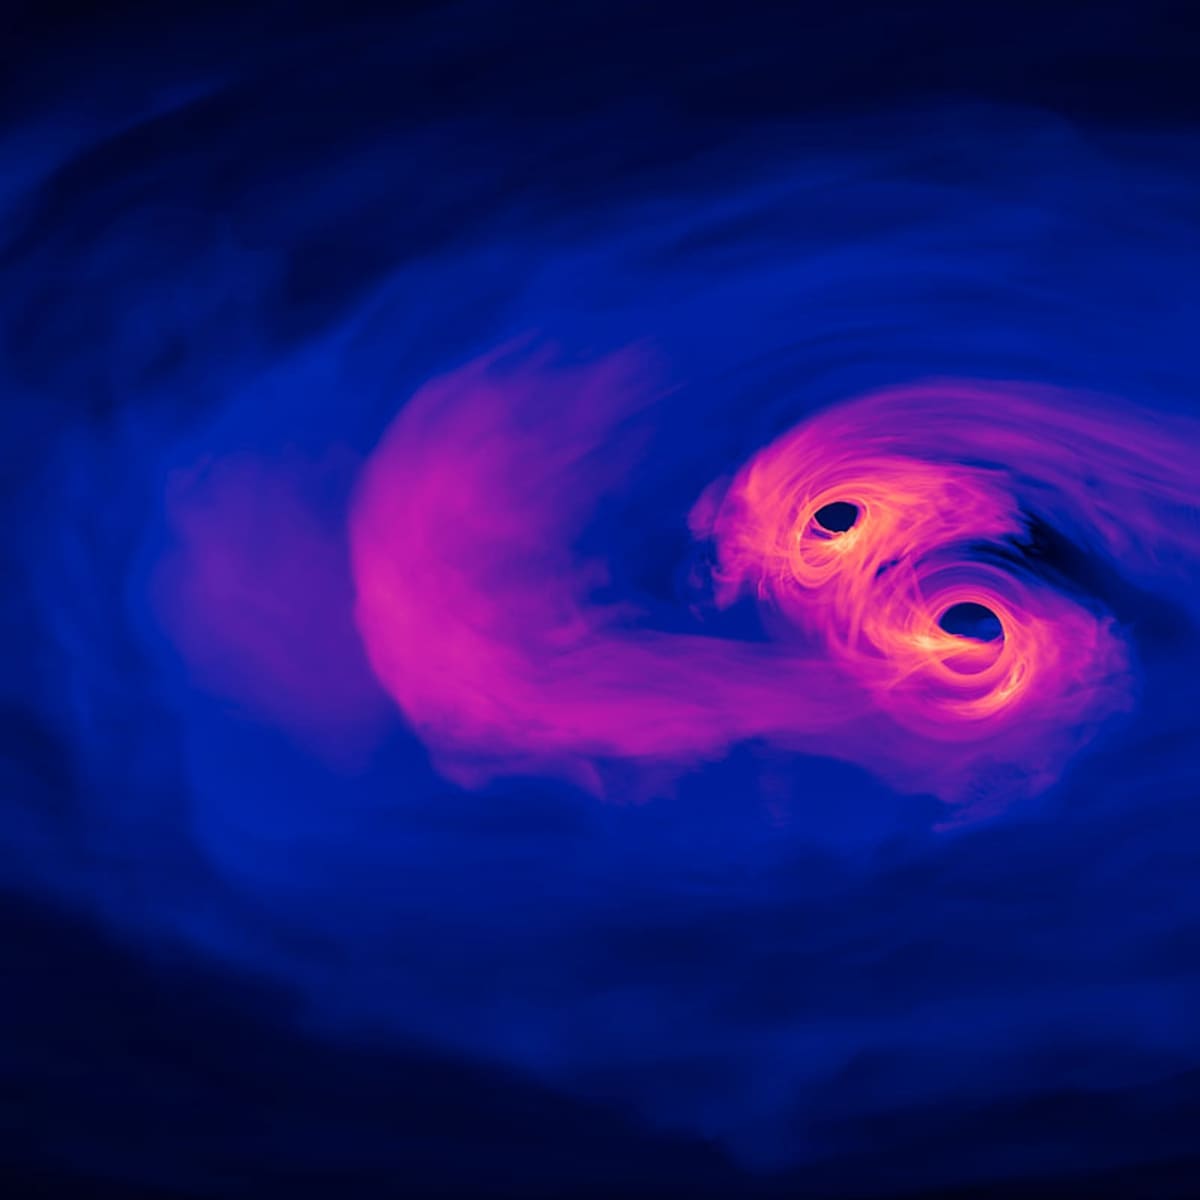 Predicen la colisión inminente de dos agujeros negros supermasivos cercanos a la Tierra